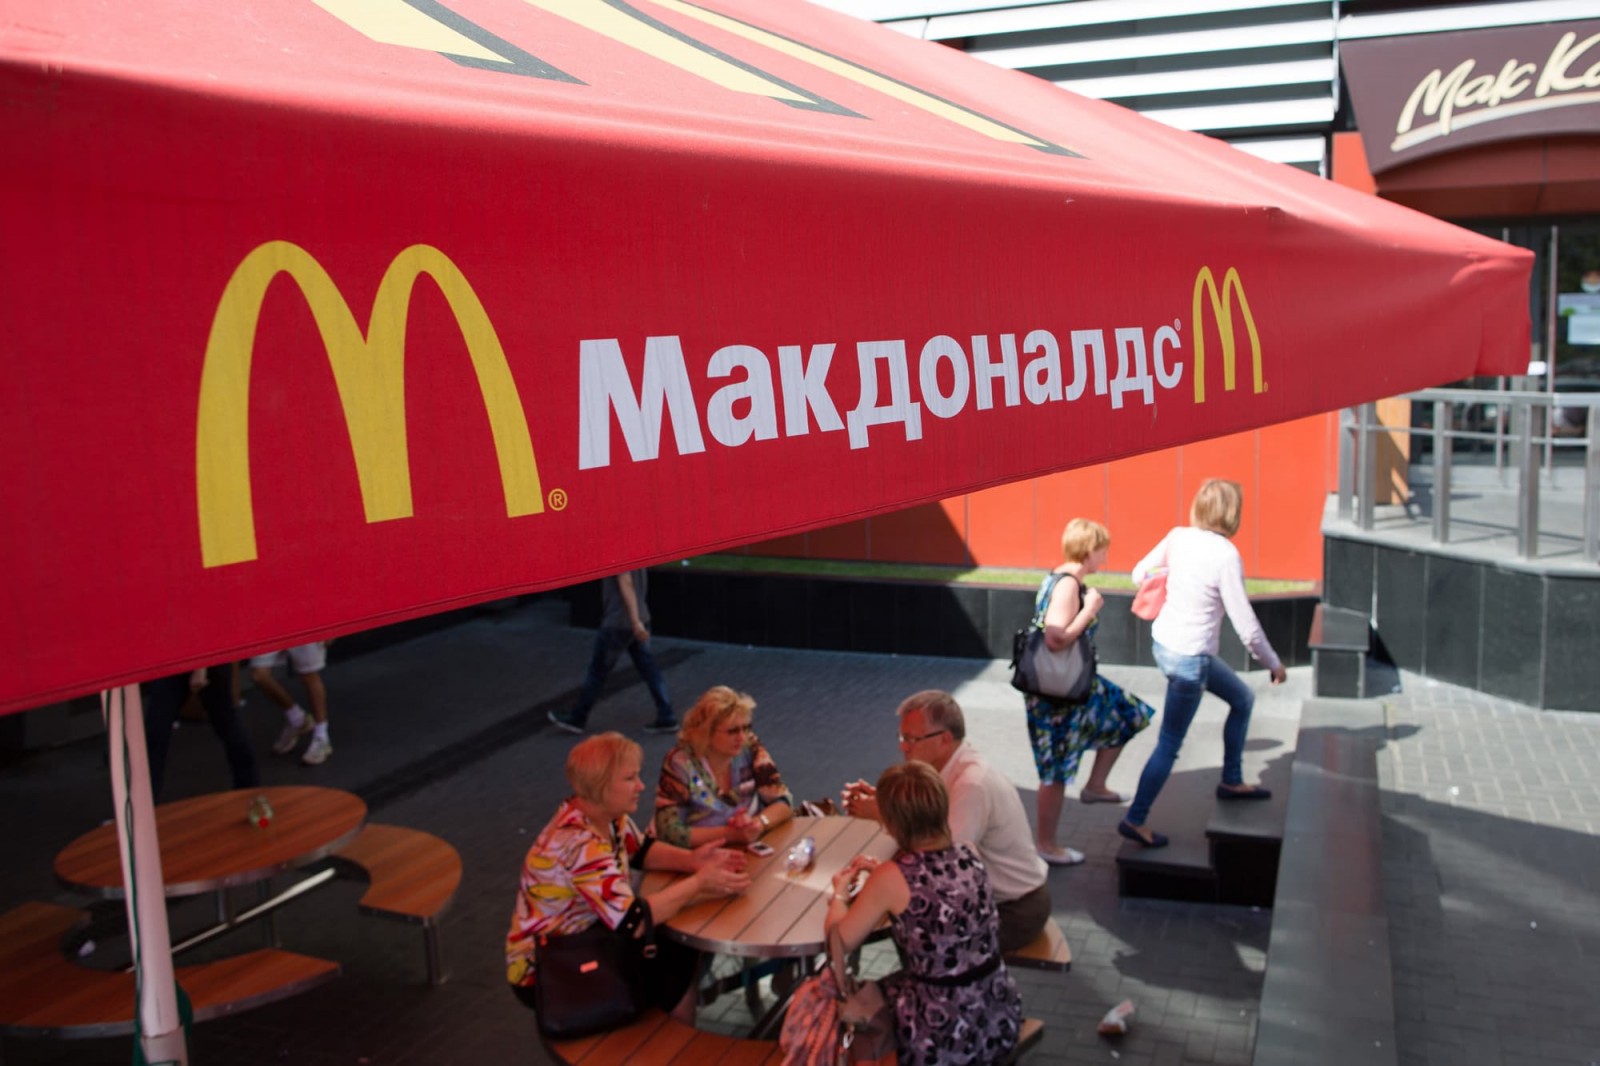 McDonald’s hoạt động trở lại tại Ukraine